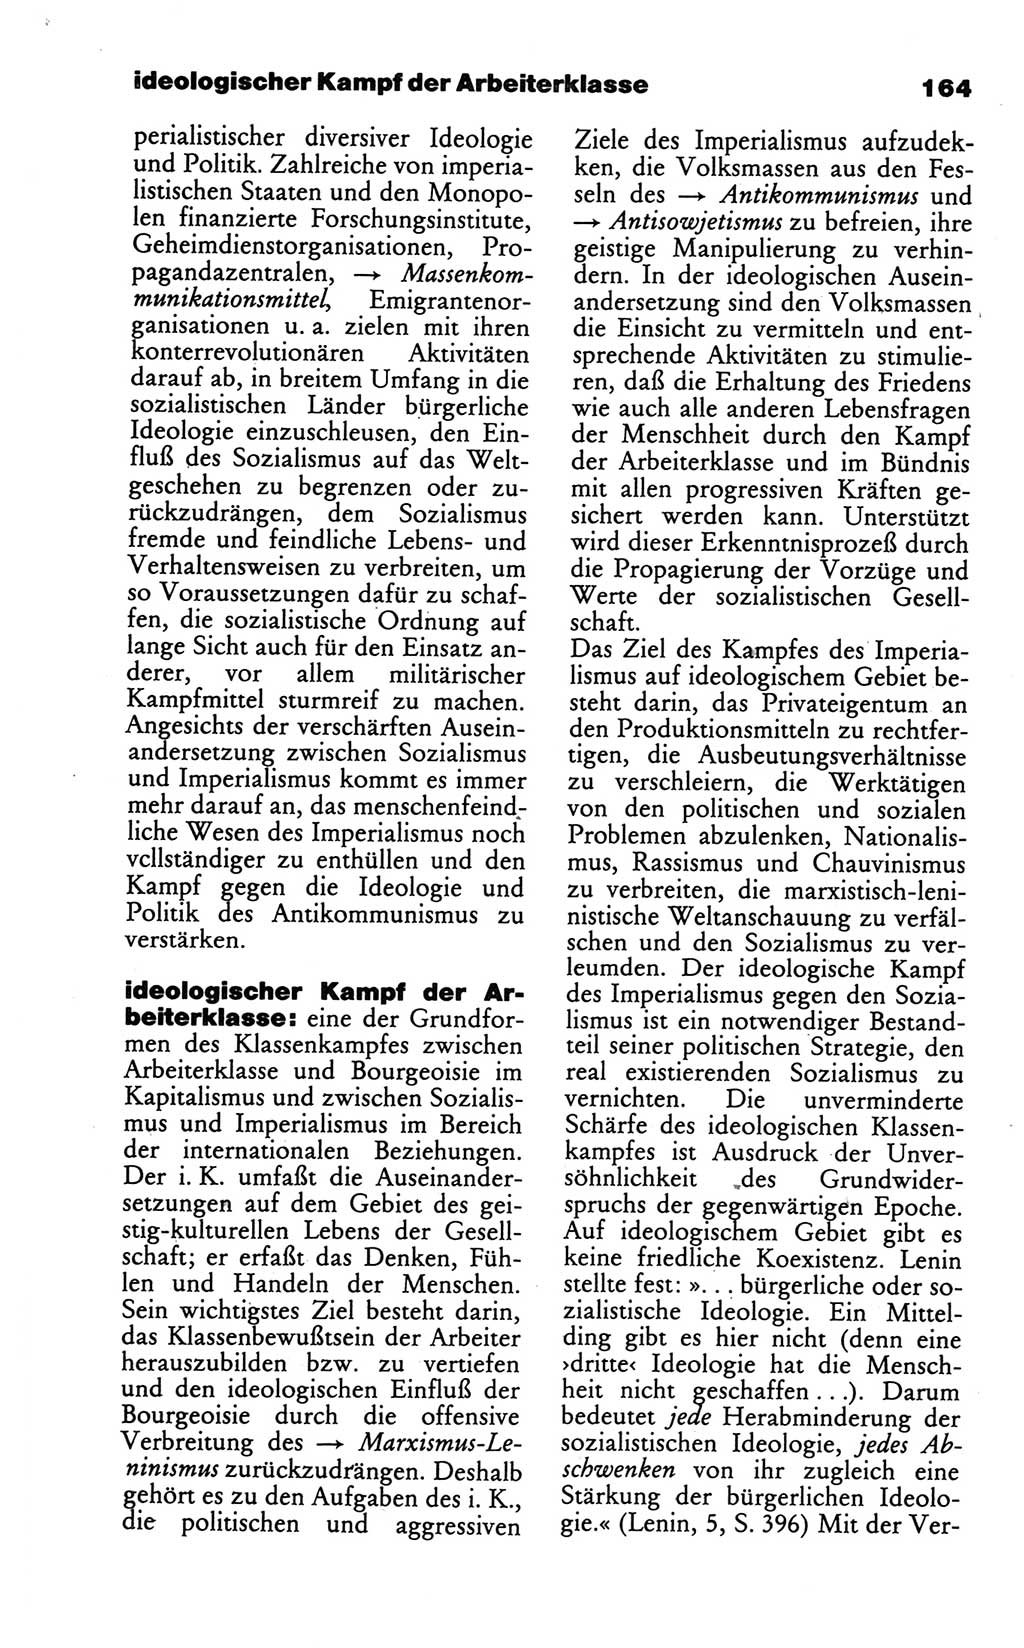 Wörterbuch des wissenschaftlichen Kommunismus [Deutsche Demokratische Republik (DDR)] 1986, Seite 164 (Wb. wiss. Komm. DDR 1986, S. 164)